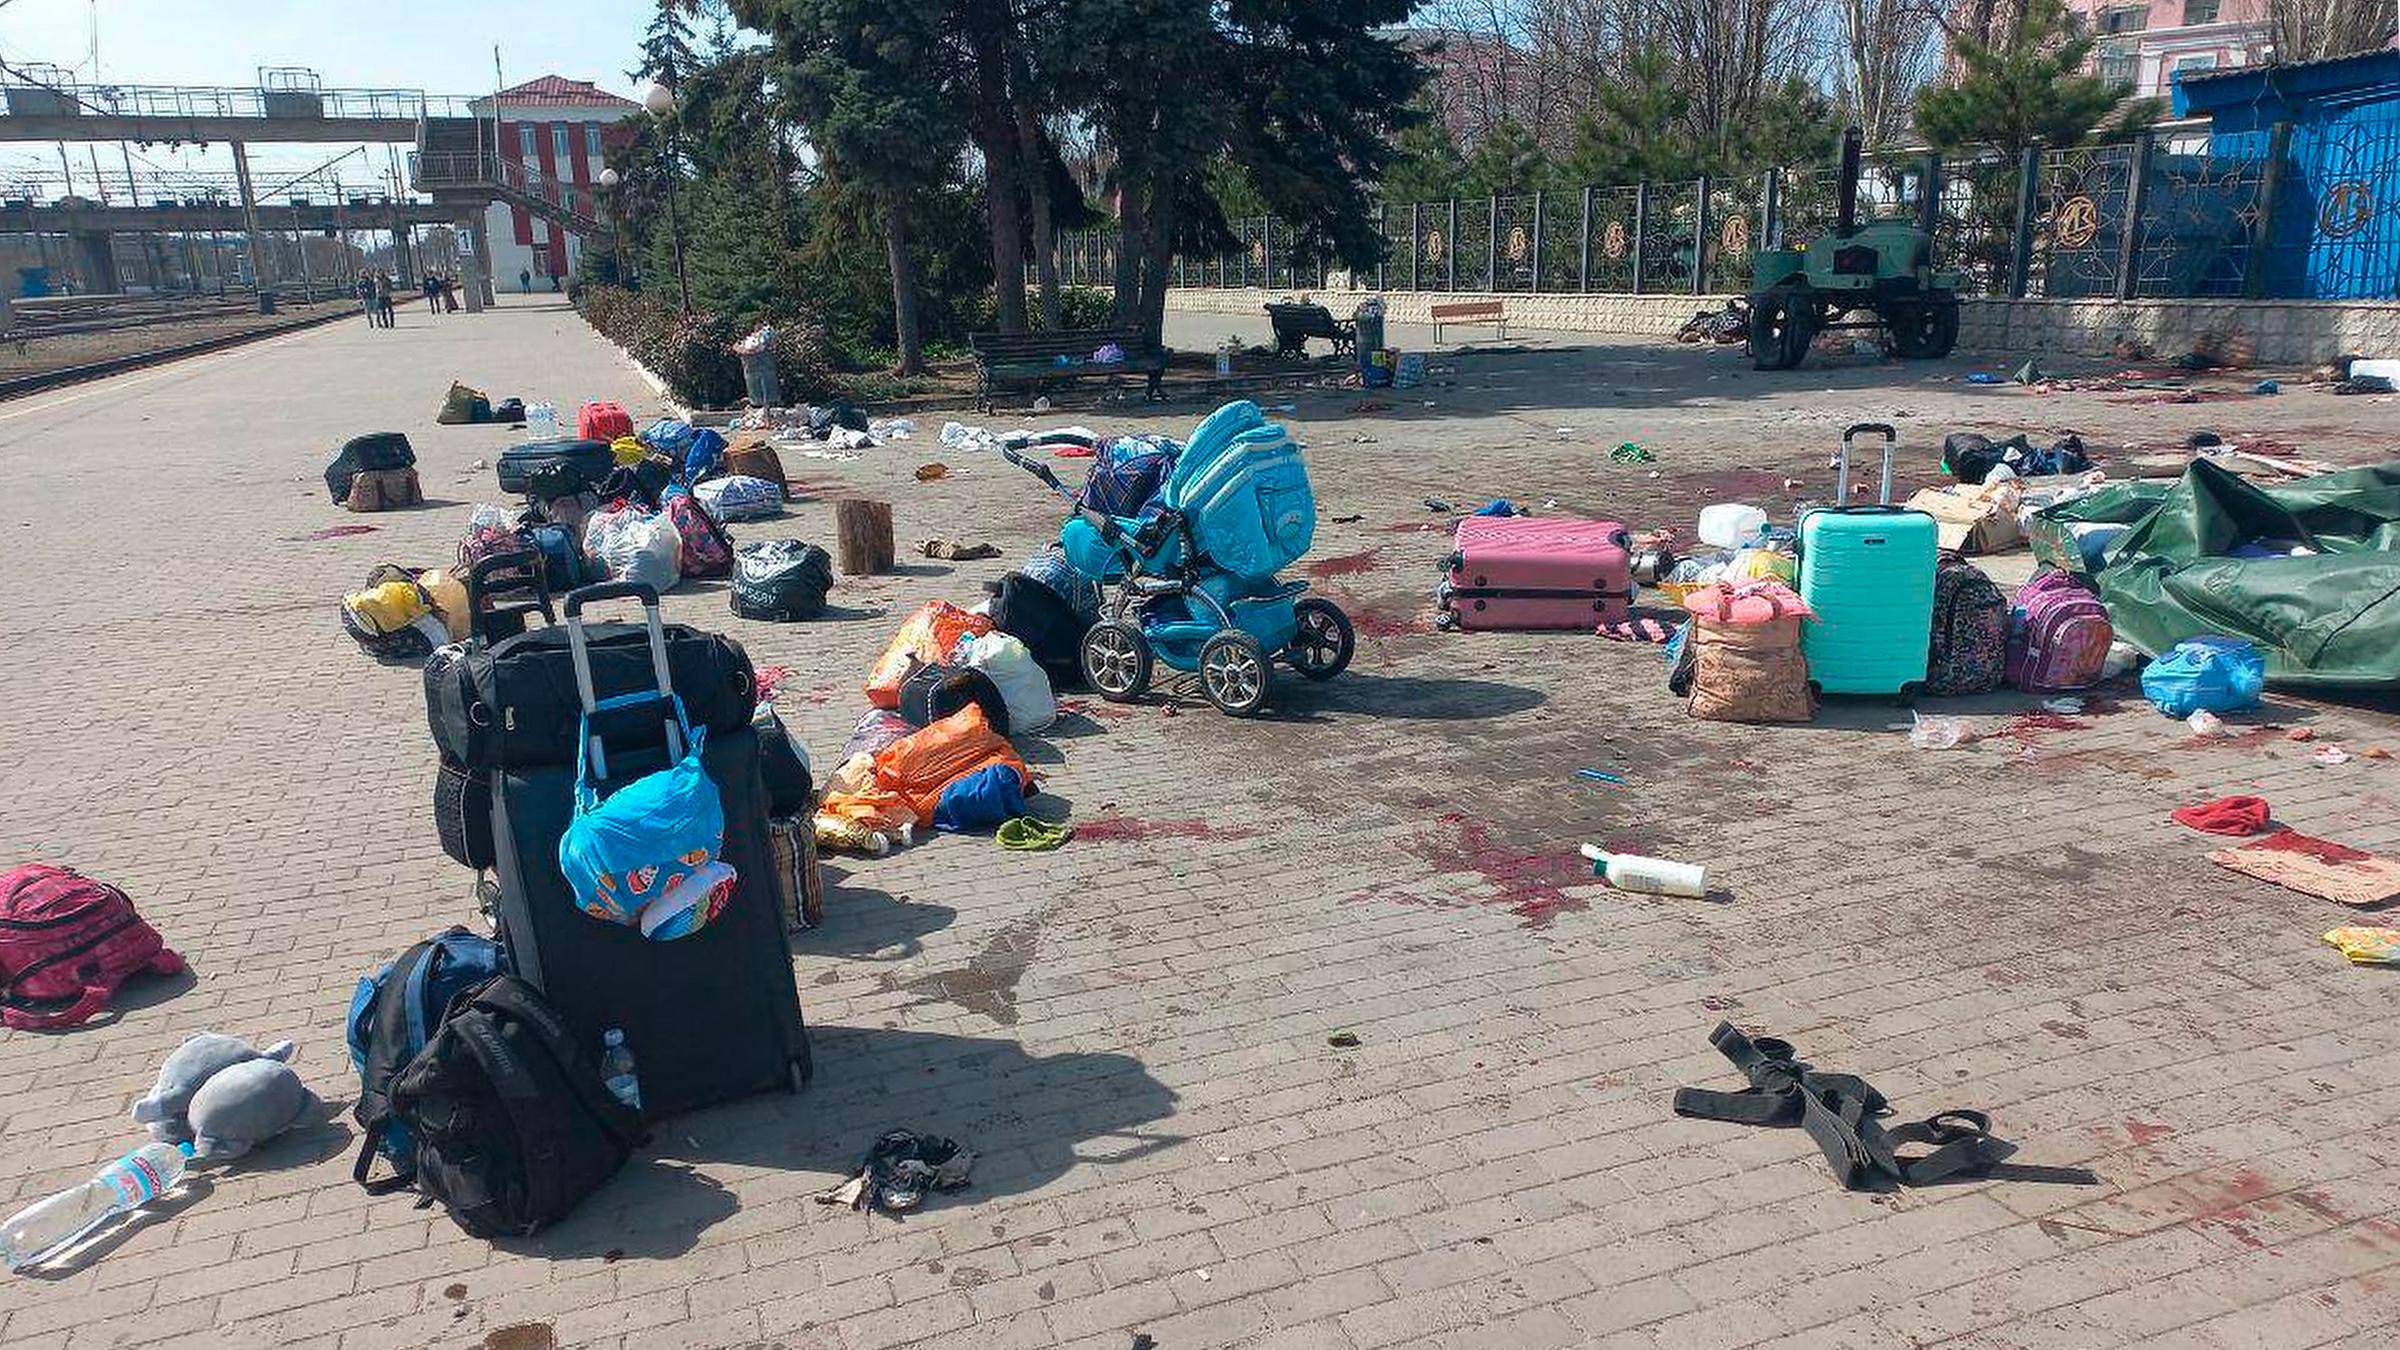 Blutflecken zwischen Taschen und einem Kinderwagen auf einem Bahnsteig nach russischem Beschuss des Bahnhofs in Kramatorsk (Ukraine), aufgenommen am 08.04.2022